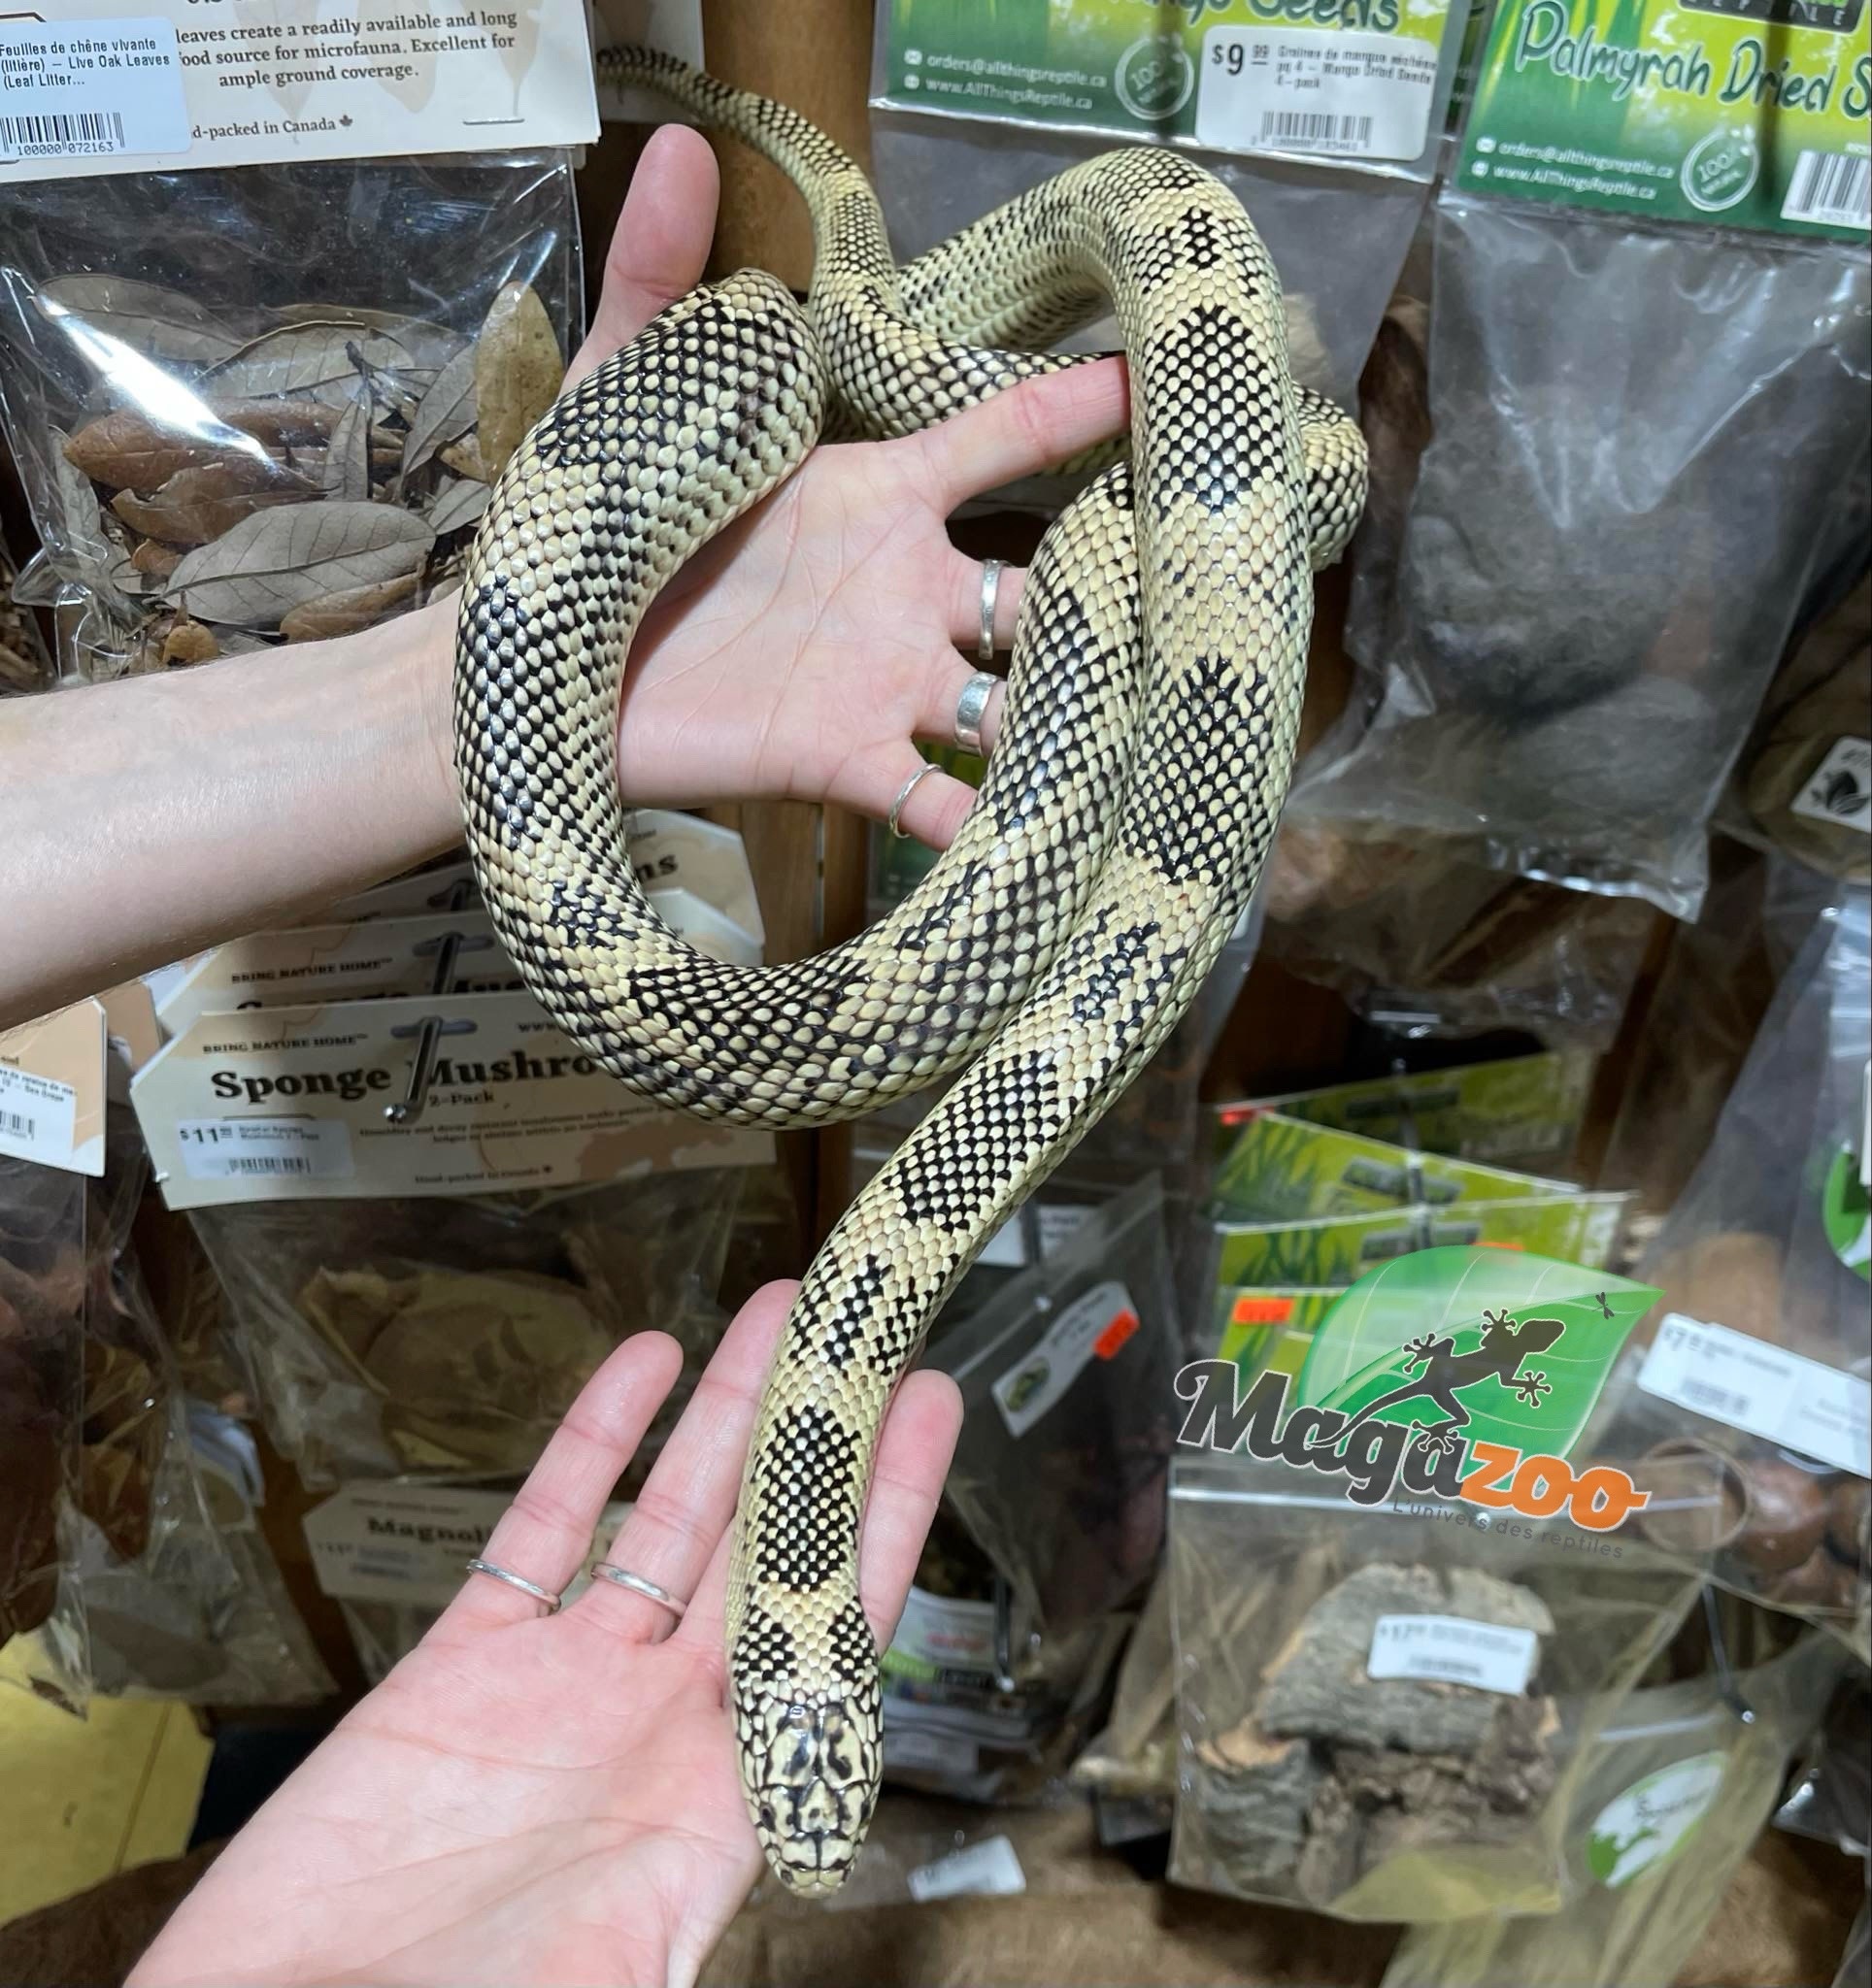 Magazoo Adult Florida King Snake / 2nd chance adoption